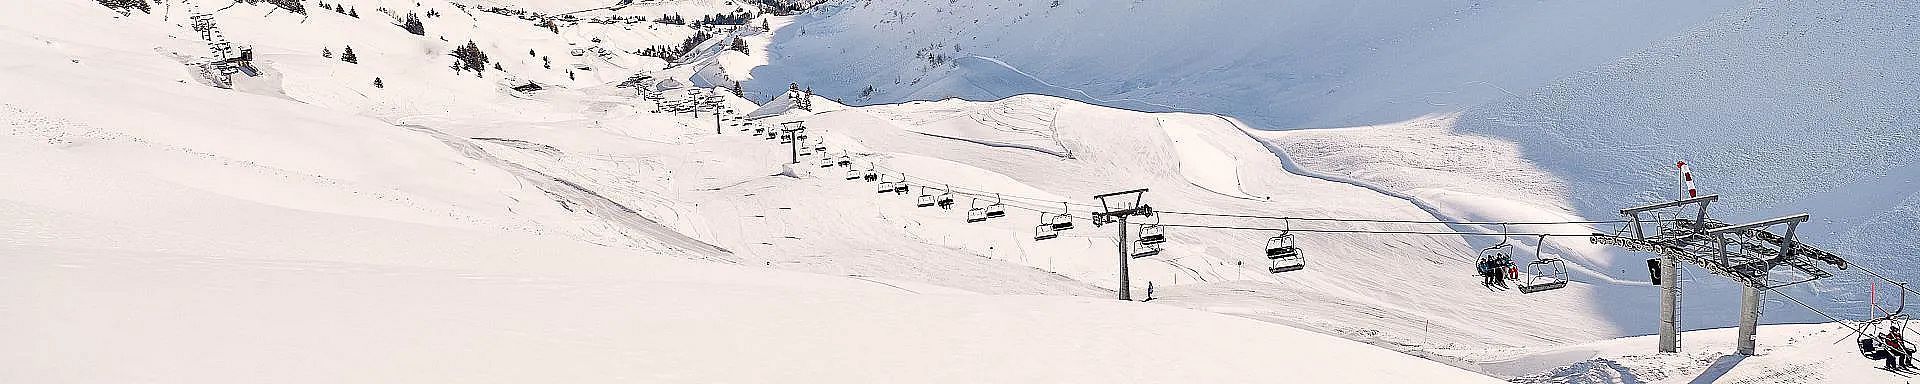 walsertal-winter-faschina-lift